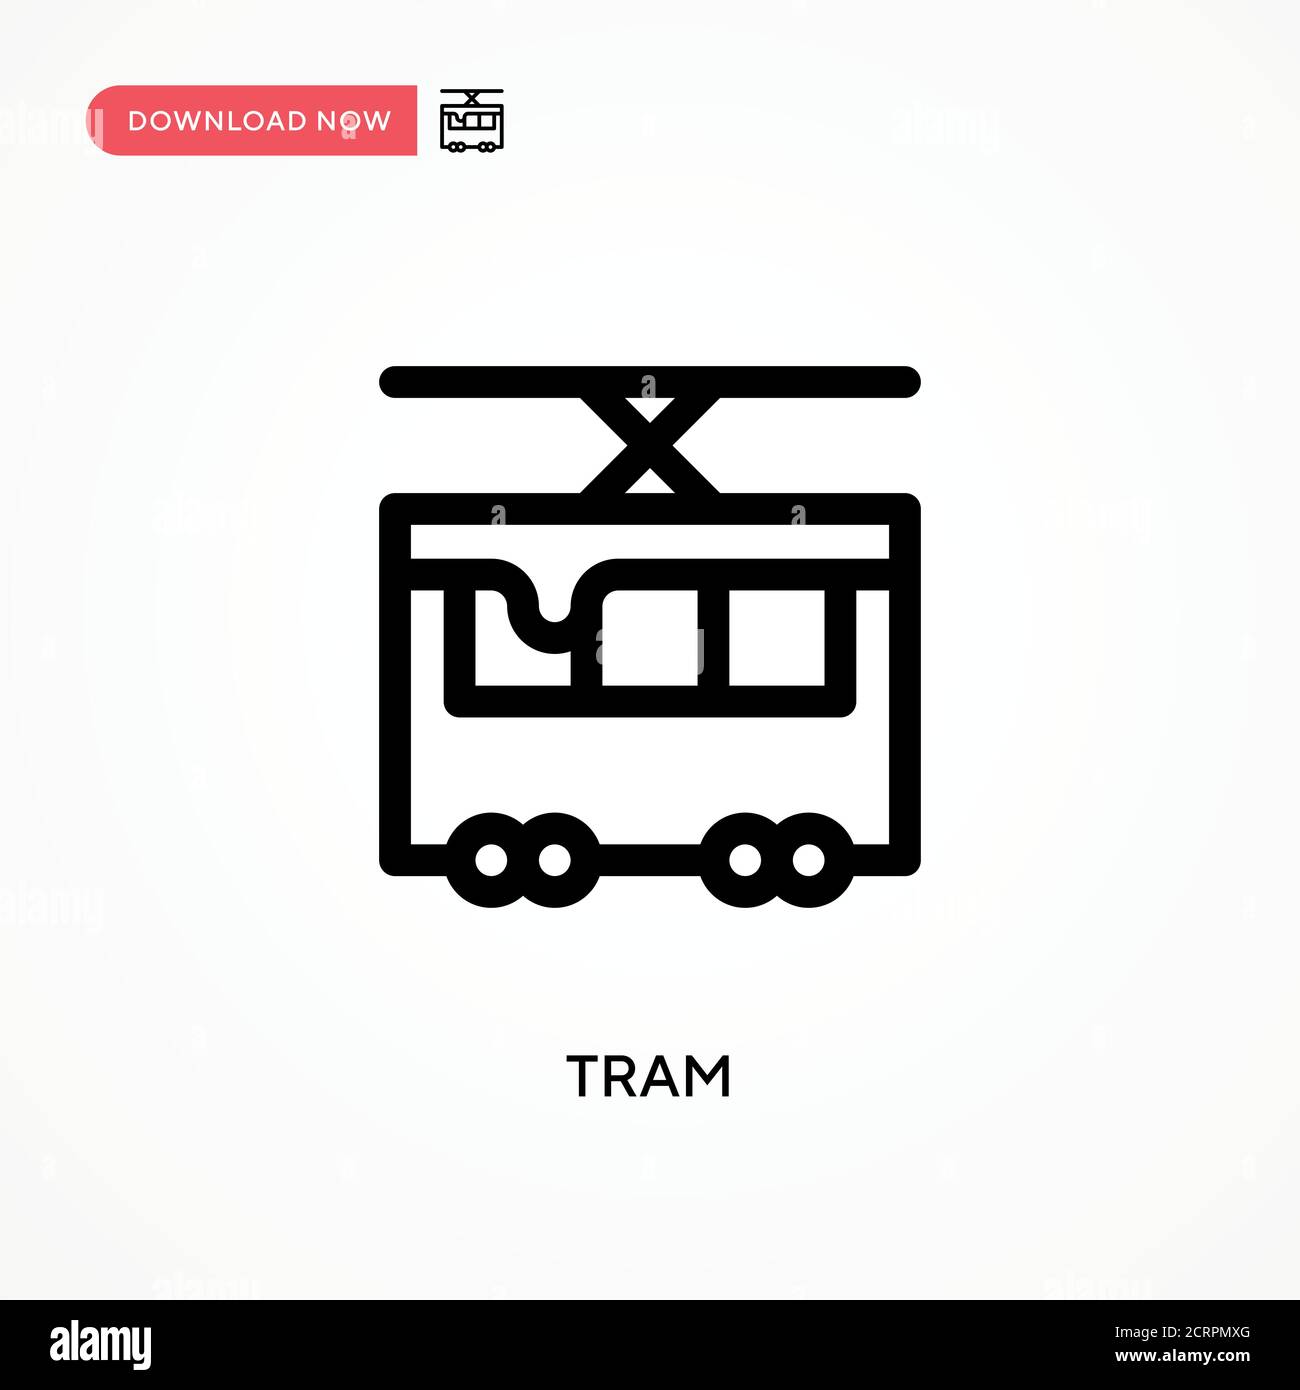 Tram Simple Vektor-Symbol. Moderne, einfache flache Vektor-Illustration für Website oder mobile App Stock Vektor